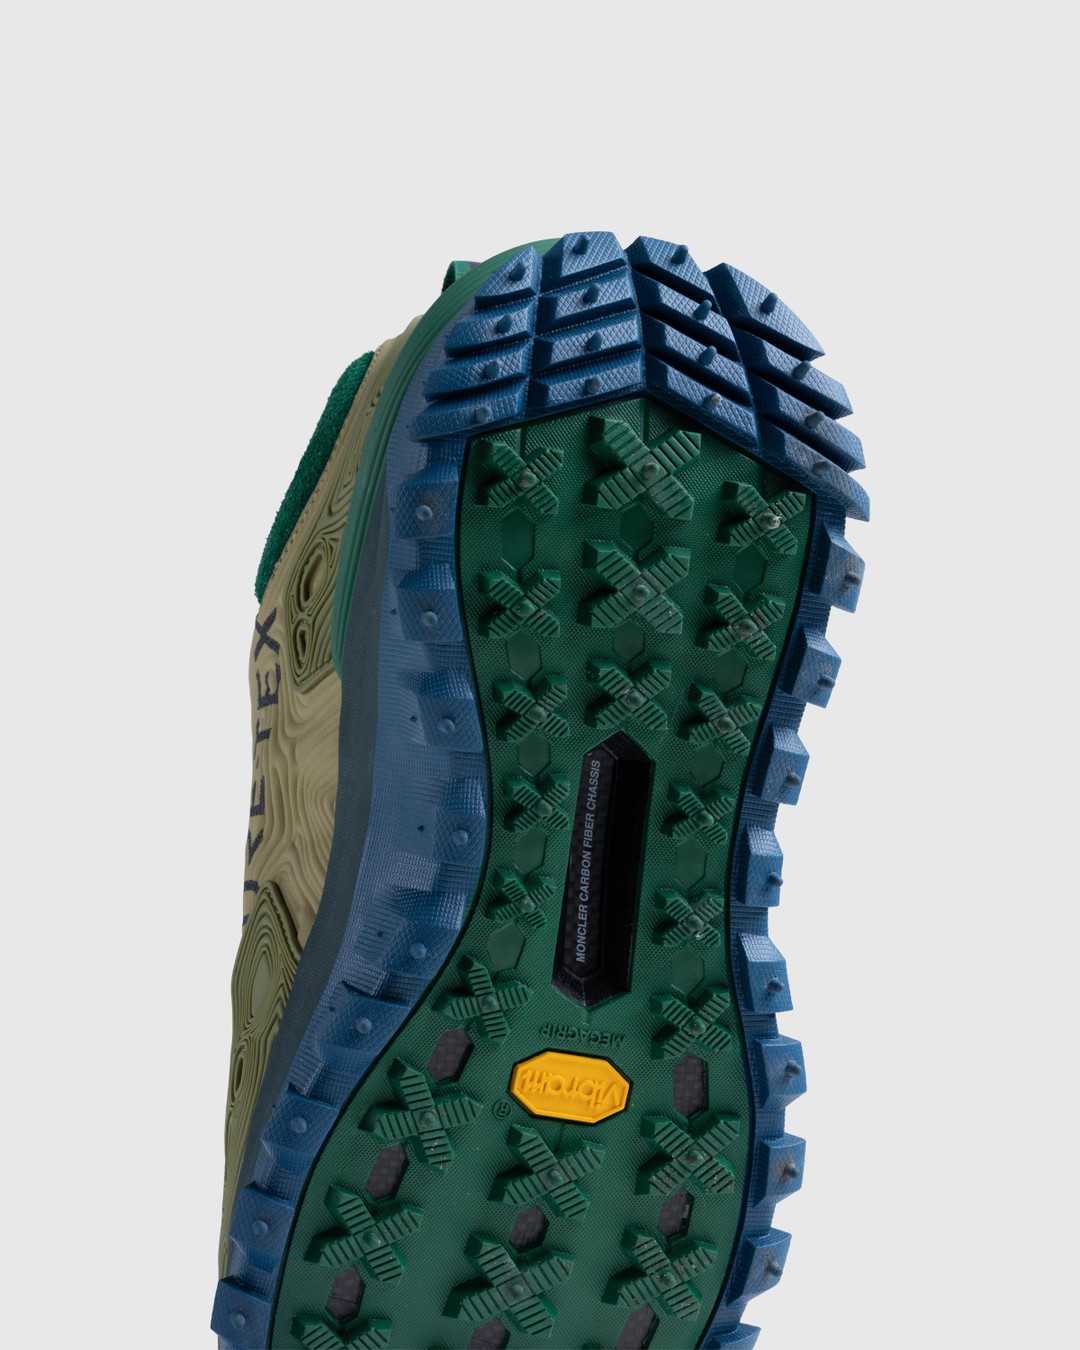 Moncler x Salehe Bembury – Trailgrip Grain Sneakers Beige - Low Top Sneakers - Beige - Image 6